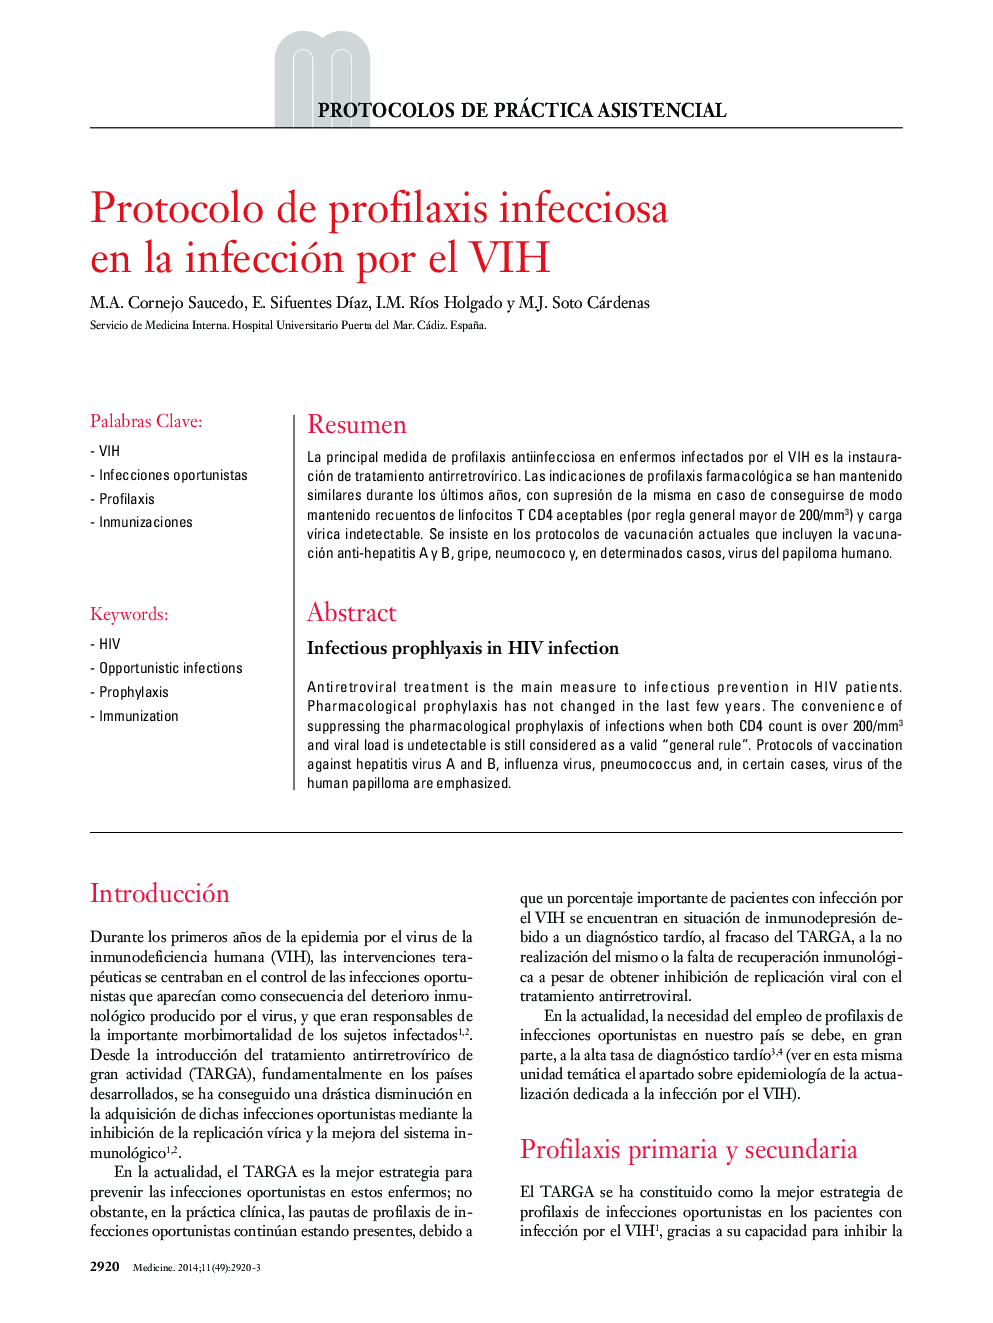 Protocolo de profilaxis infecciosa en la infección por el VIH